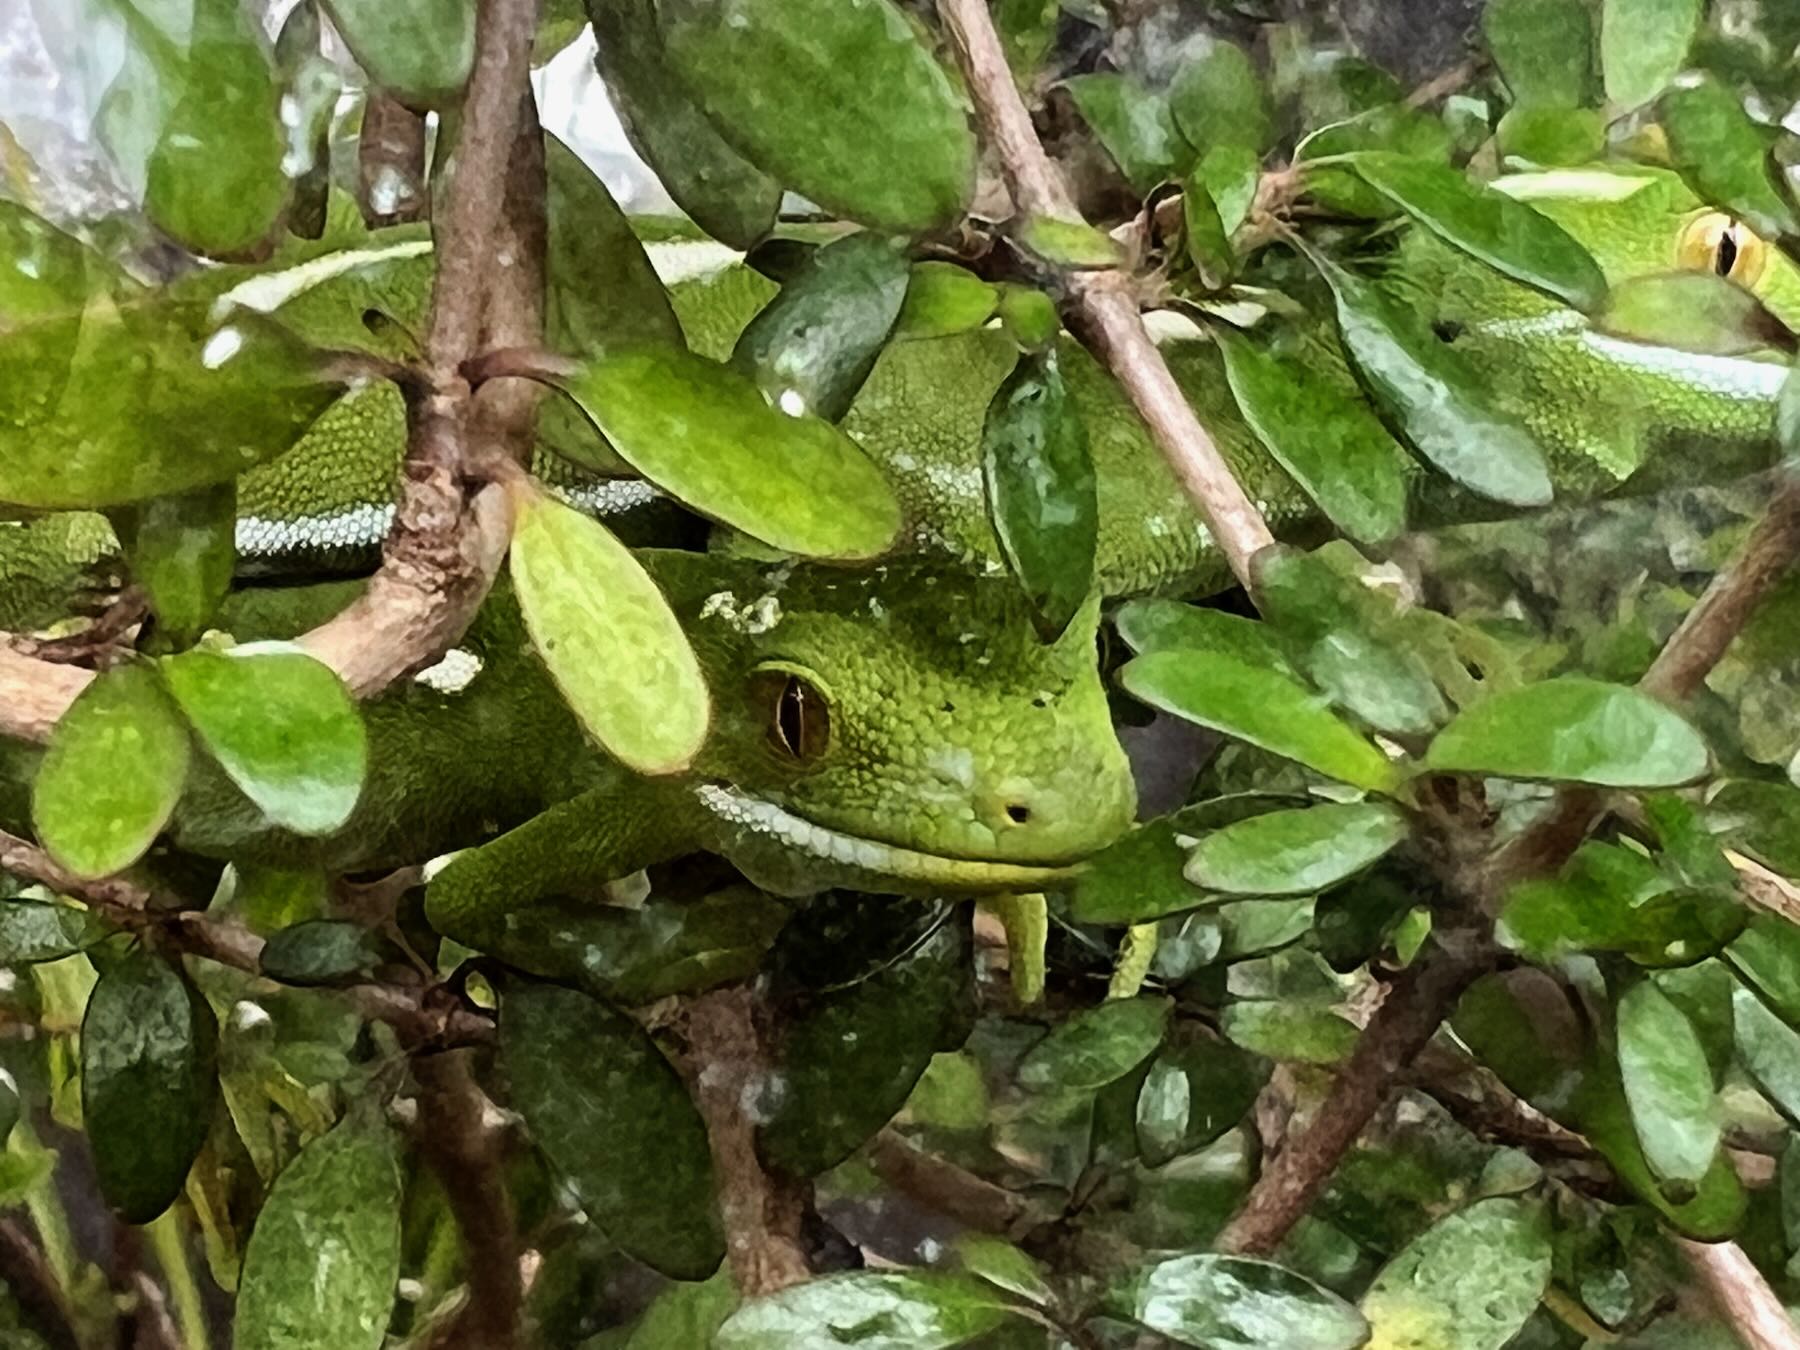 Green gecko amongst leaves. 